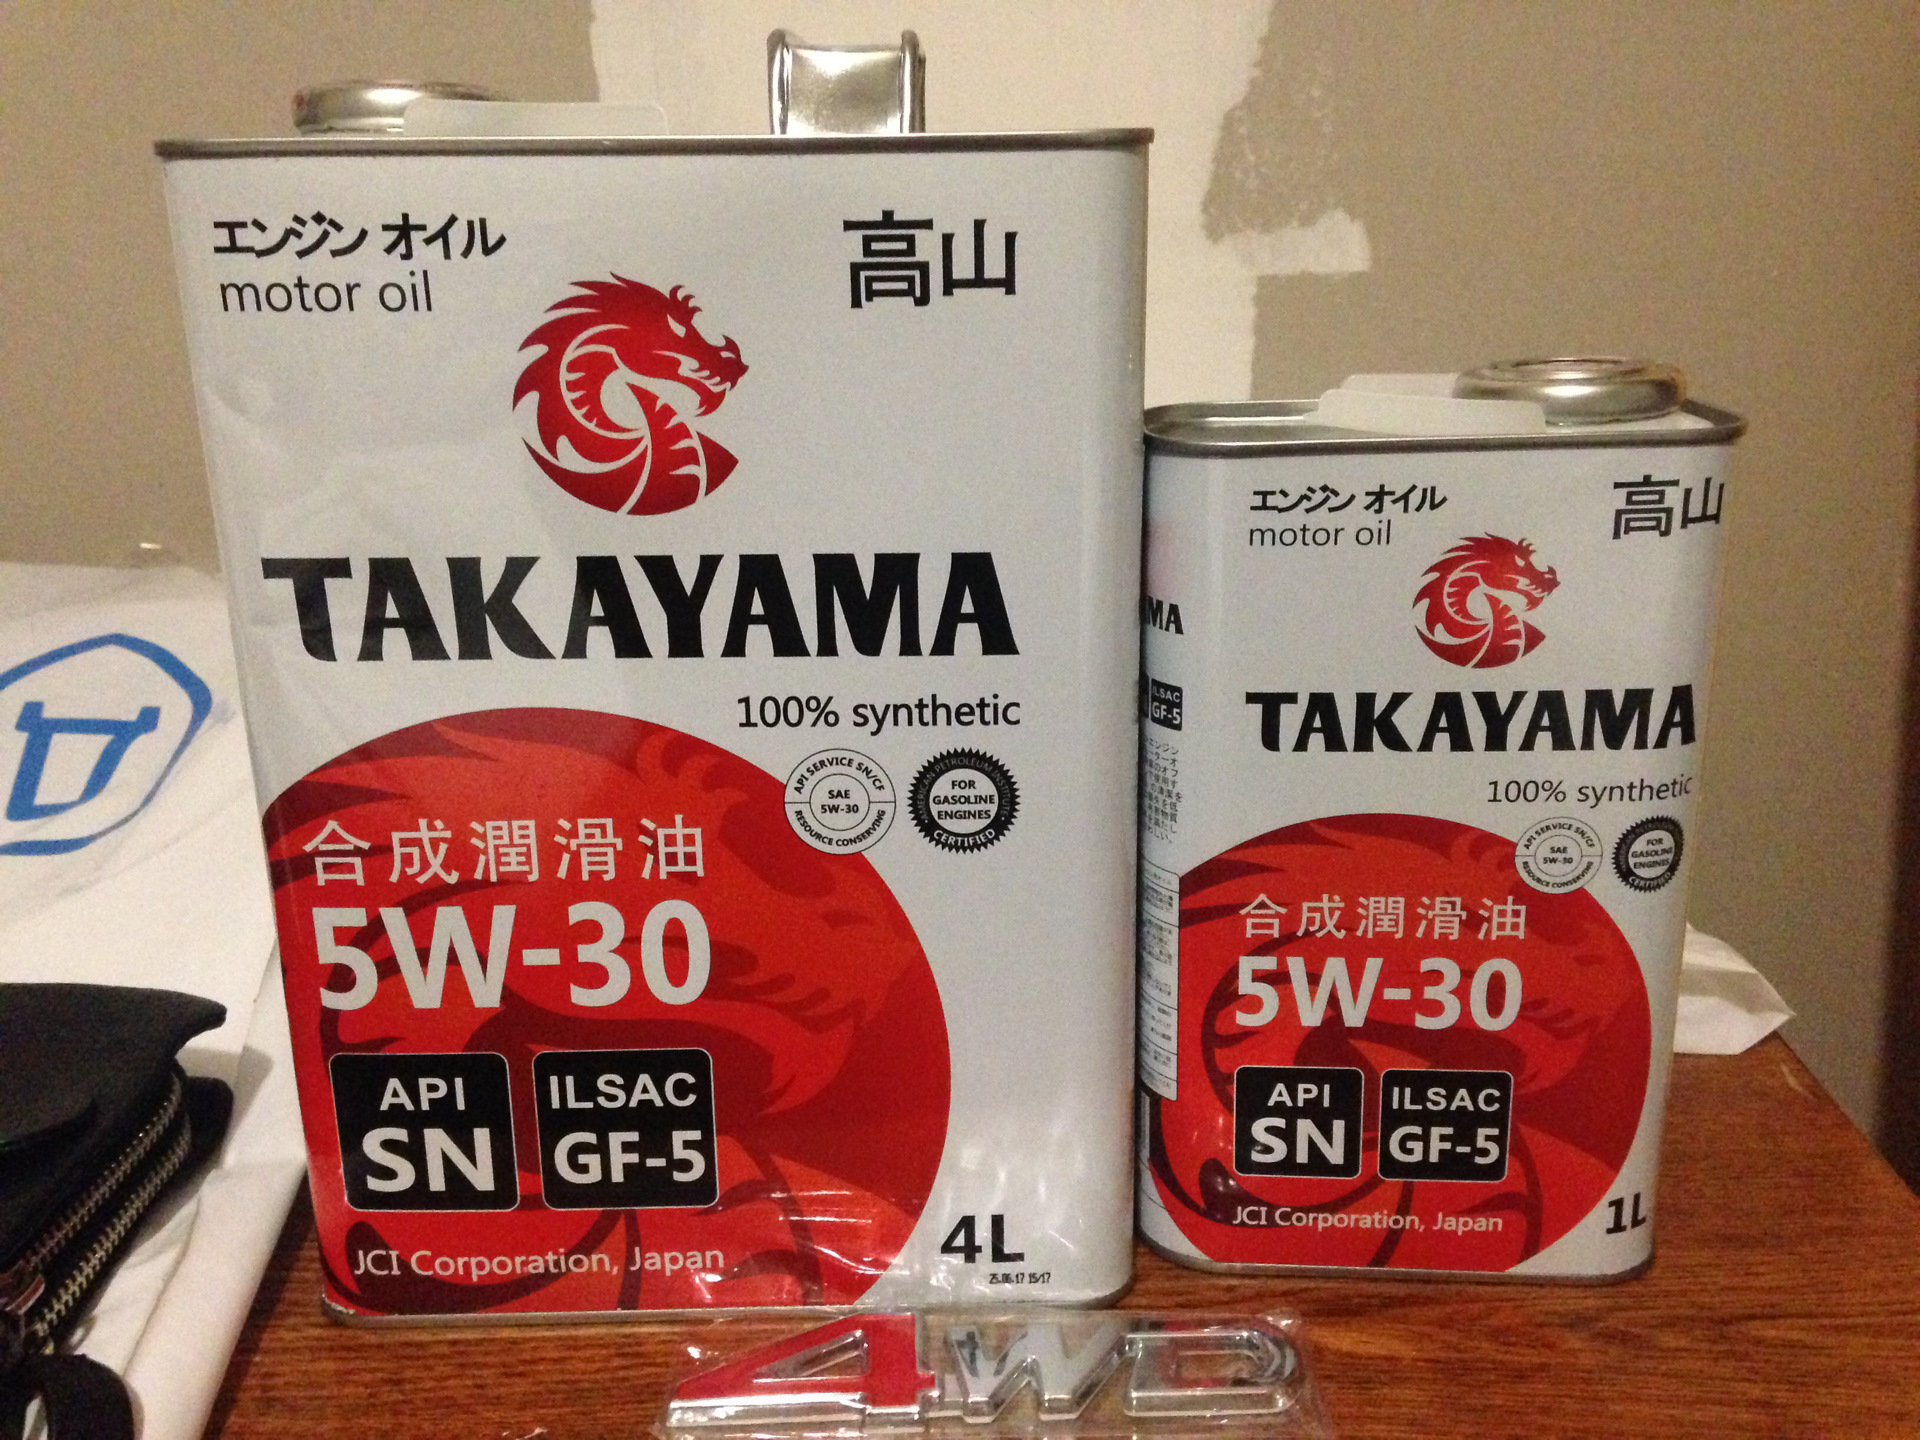 Японское масло отзывы. Масло моторное японское Такаяма. Масло Takayama (200 л). Японские масла Сузуки. Масло моторное Takayama 605552.